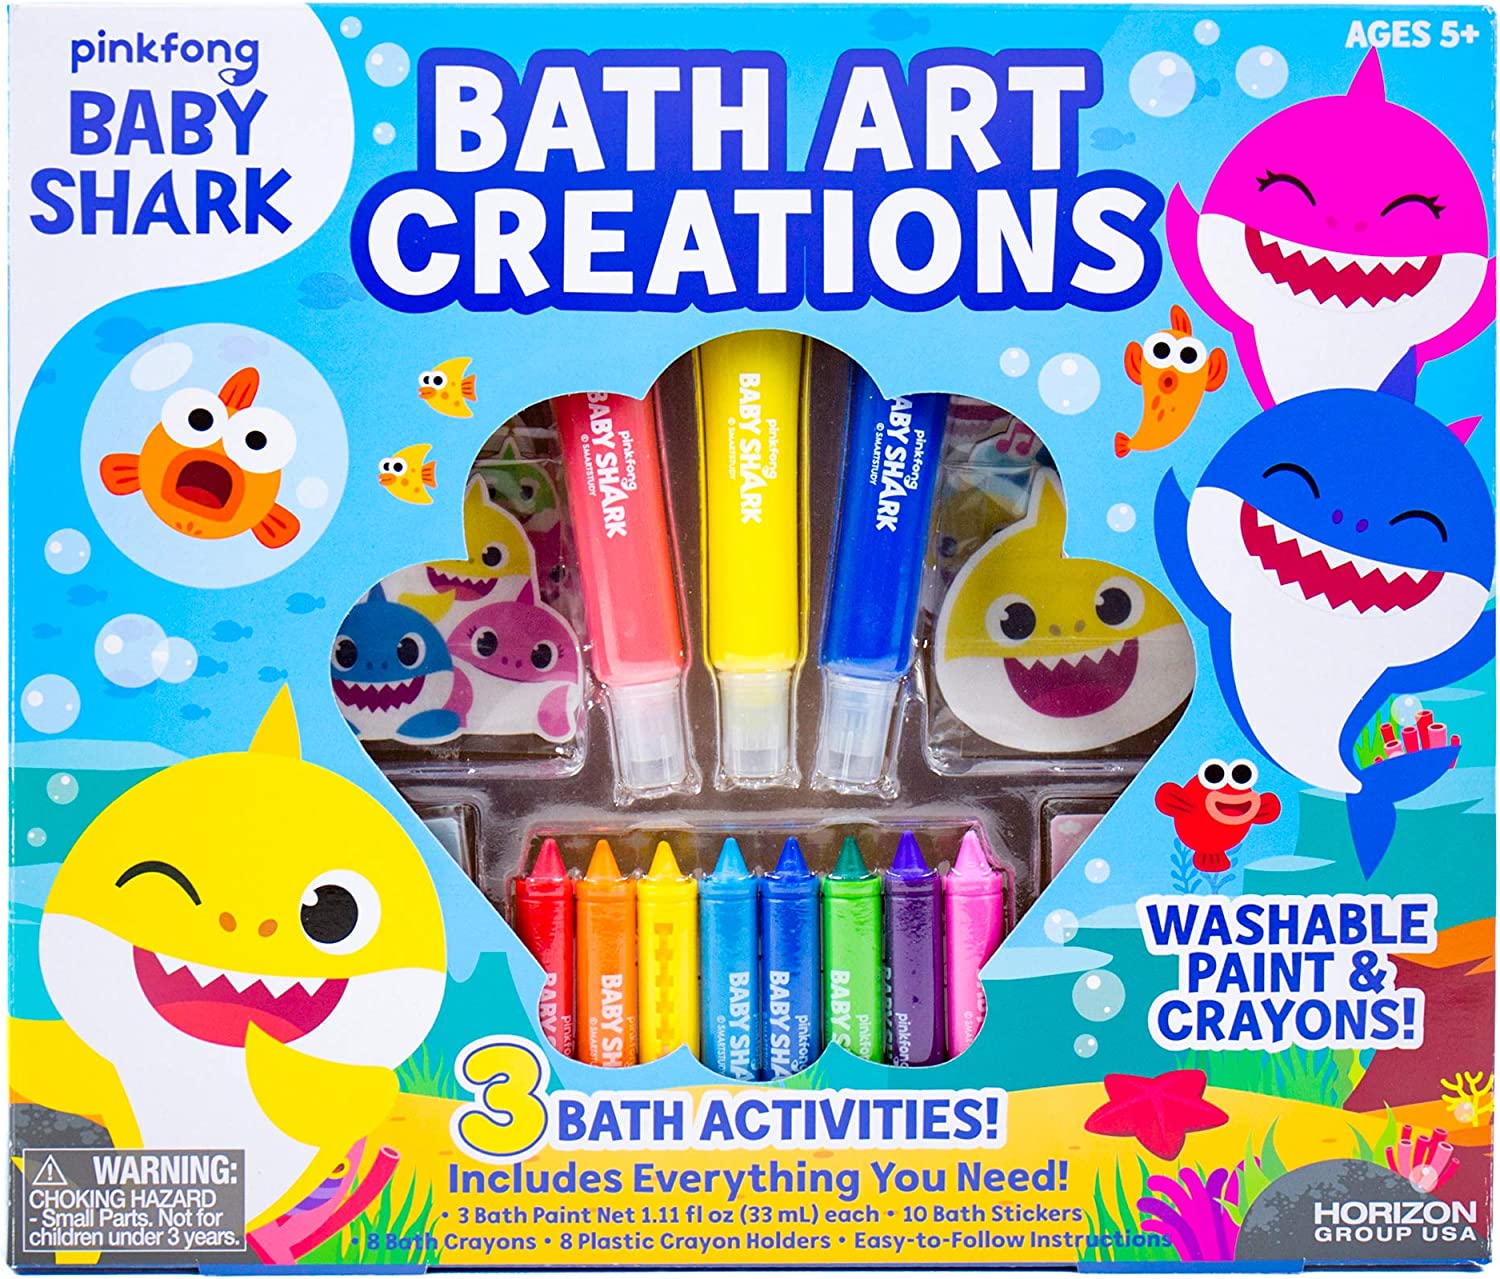 Bộ bút màu và sơn có thể giặt được theo chủ đề Baby Shark với nhiều màu sắc khác nhau. 